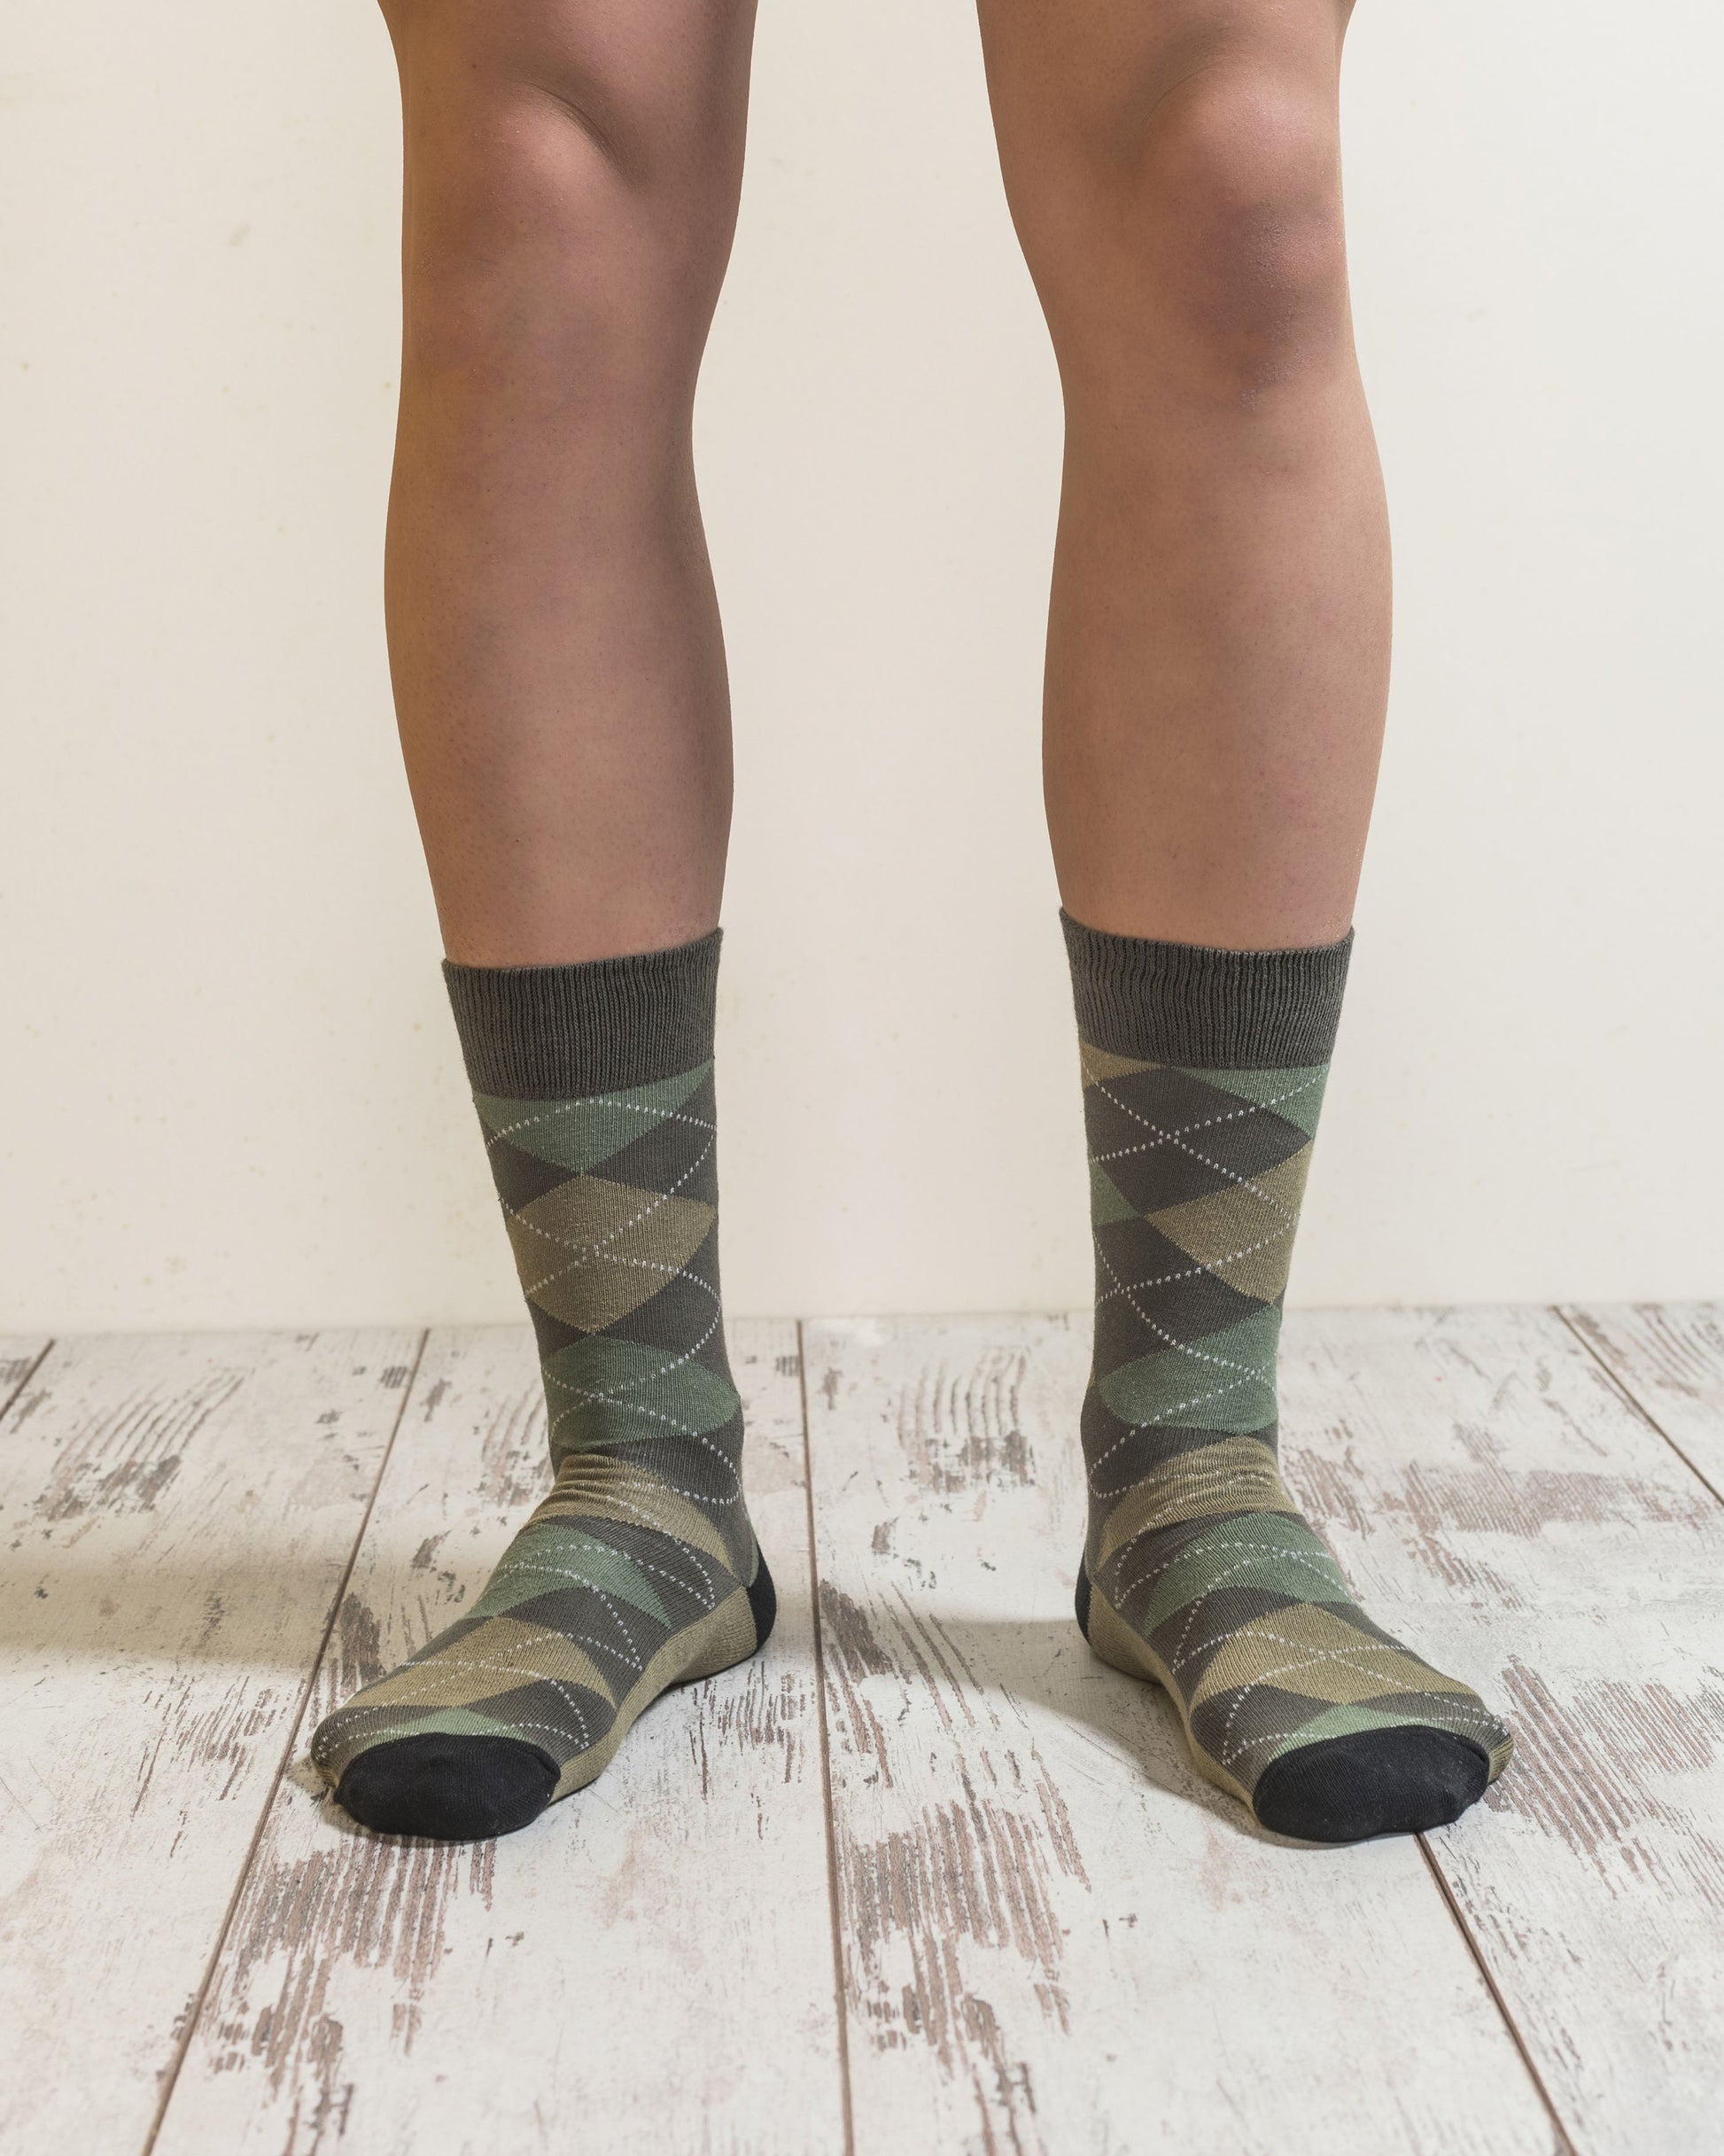 TEEK - Mens Olive Green Mix Socks Set SOCKS theteekdotcom   